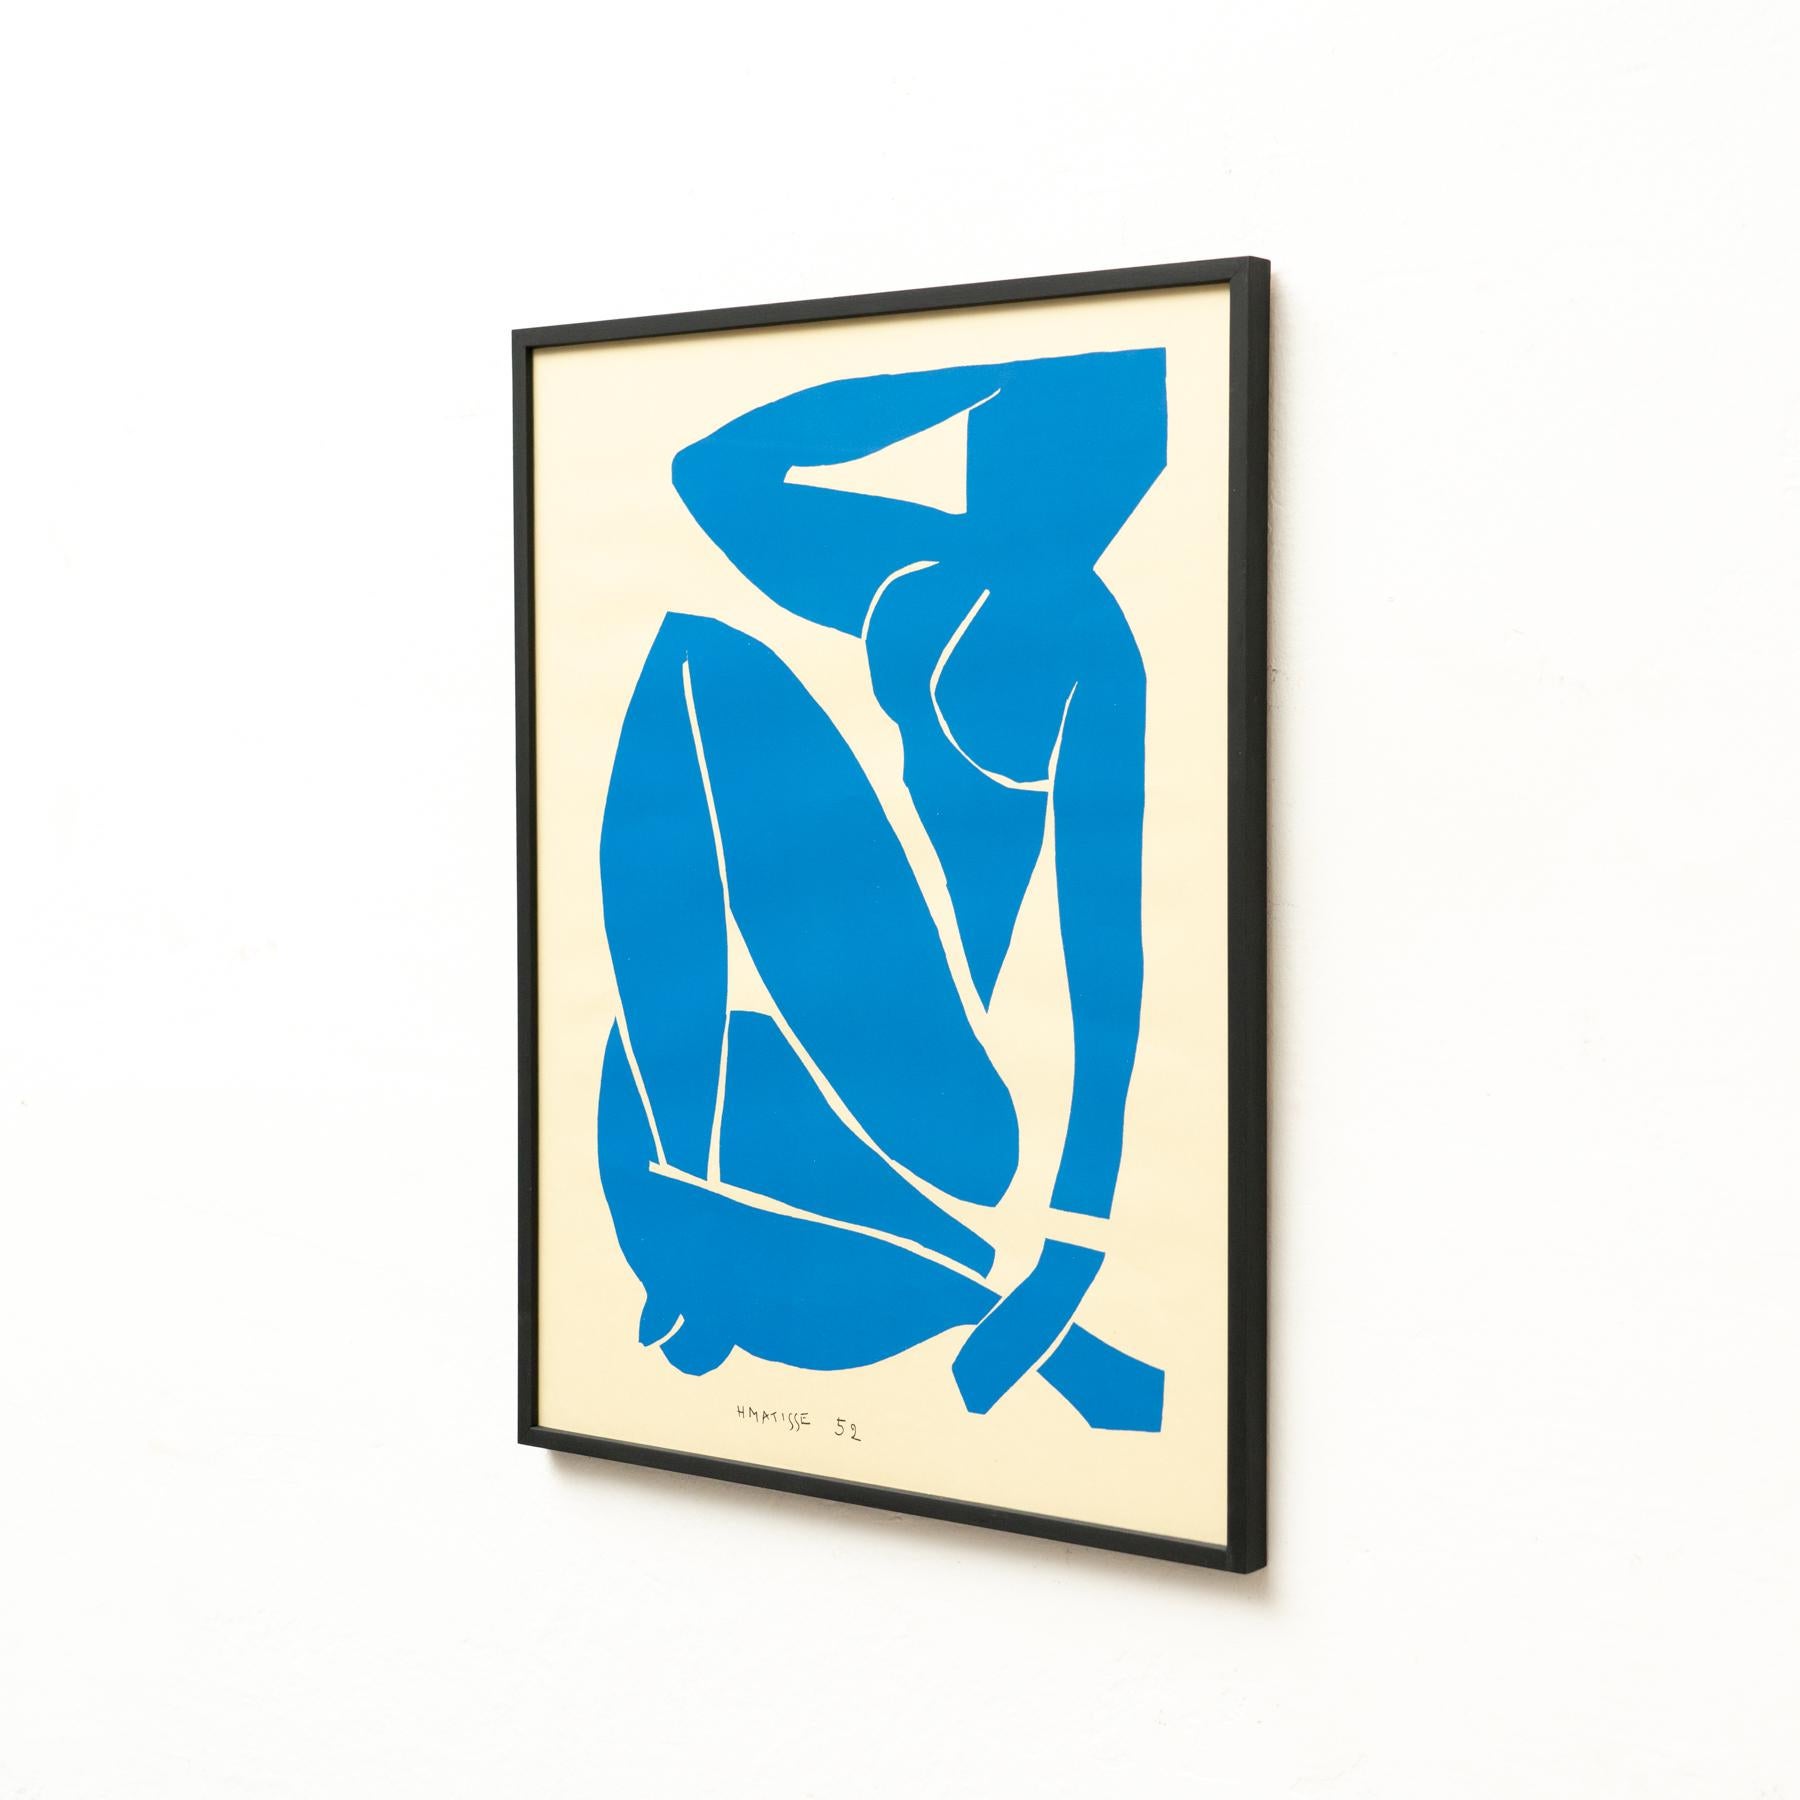 Farblithografie nach dem Werk von Henri Matisse, um 1970.

Im Stein signiert.
Herausgegeben von Edition des Nouvelles Images, Frankreich.
Gerahmt.

Henri Matisse, ob als Zeichner, Bildhauer, Grafiker oder Maler, Henri Matisse war ein Meister